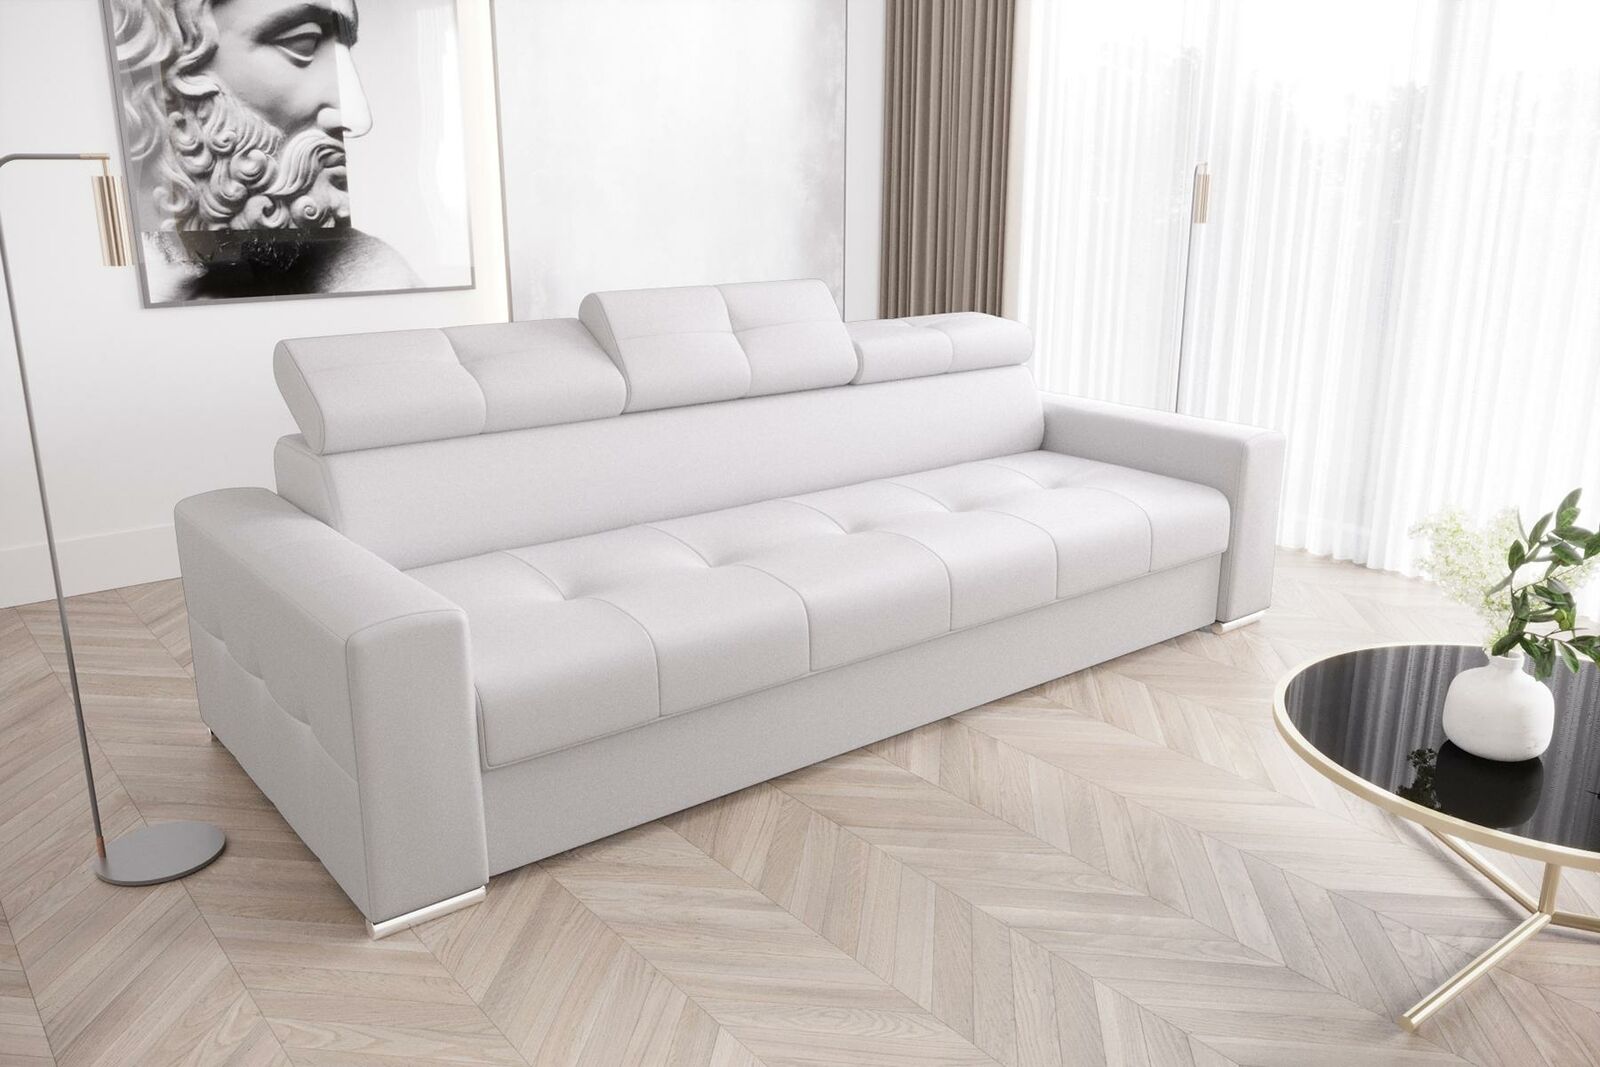 Moderne 3er Sitz Sofas Zimmer Möbel Weiß Polster Dreisitzer Couch Design Sofa